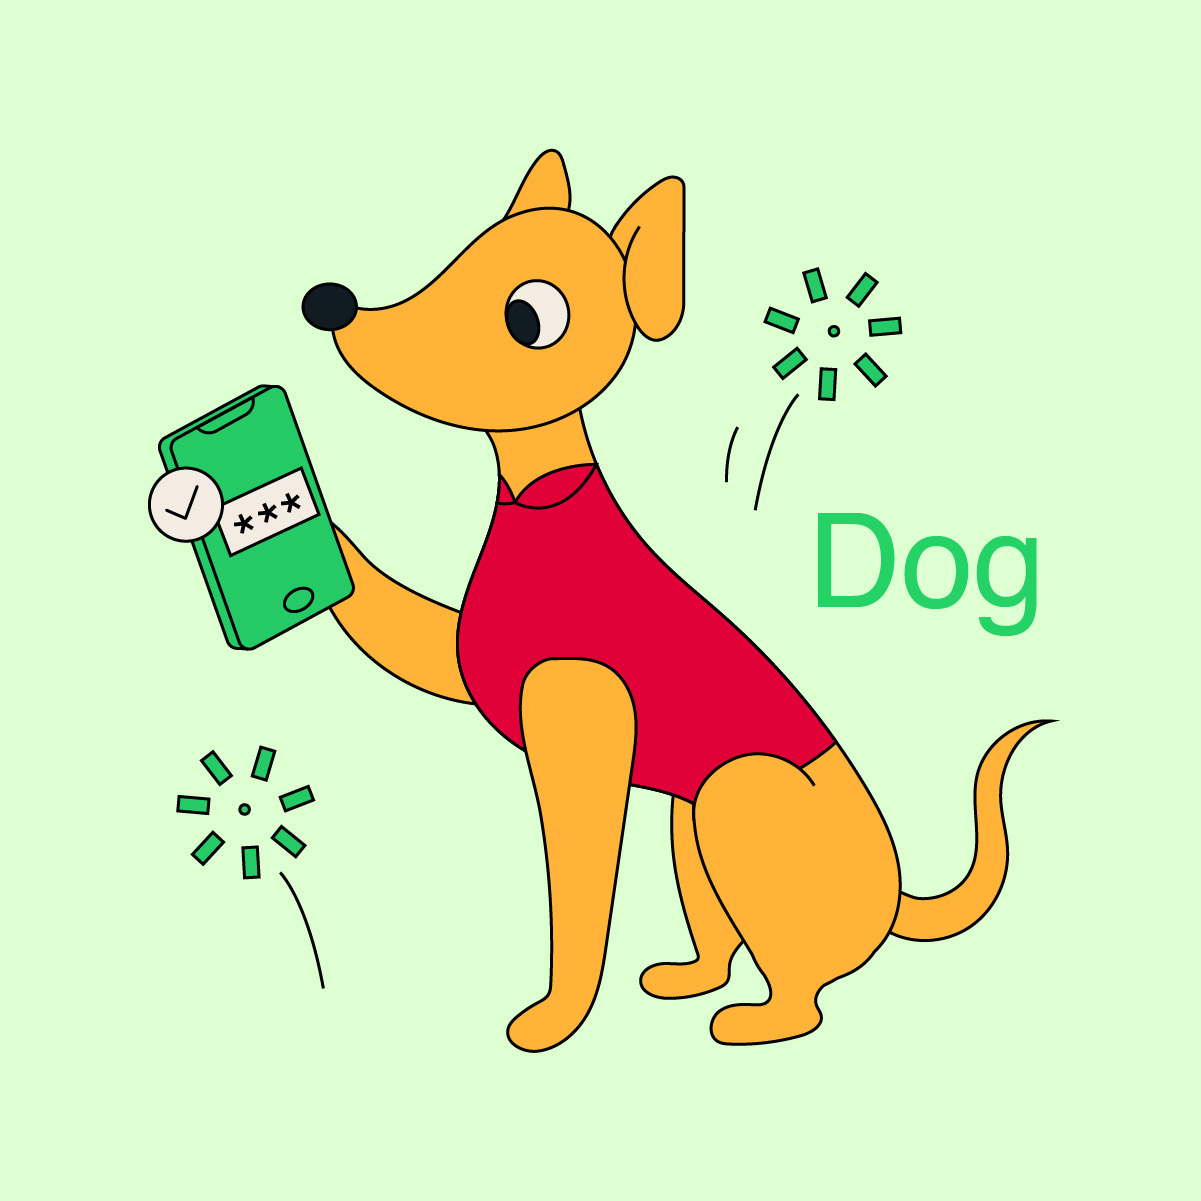 Dog zodiac sign
